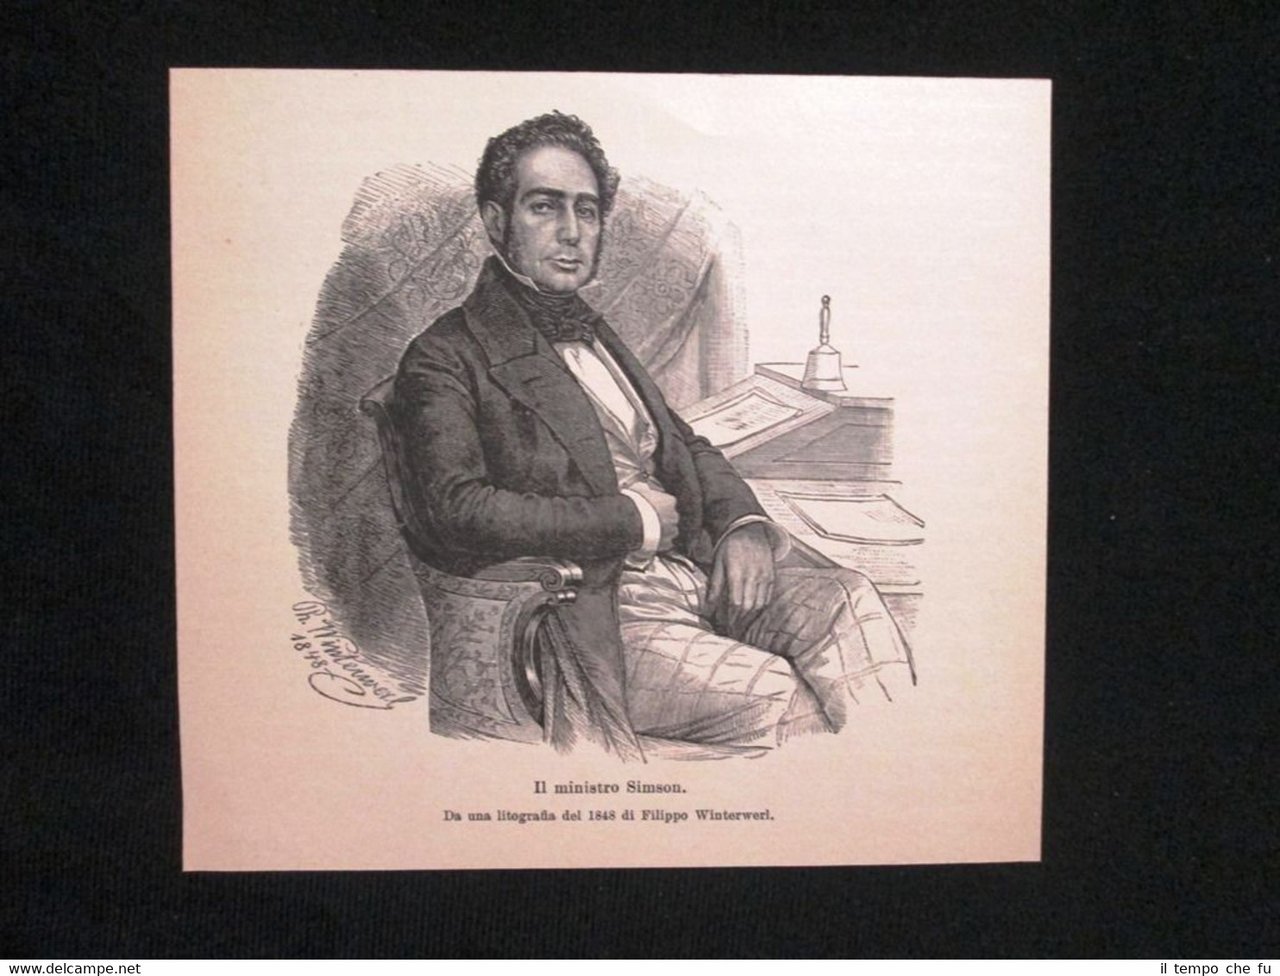 Il ministro Simson, da una litografia del 1848 di Filippo …